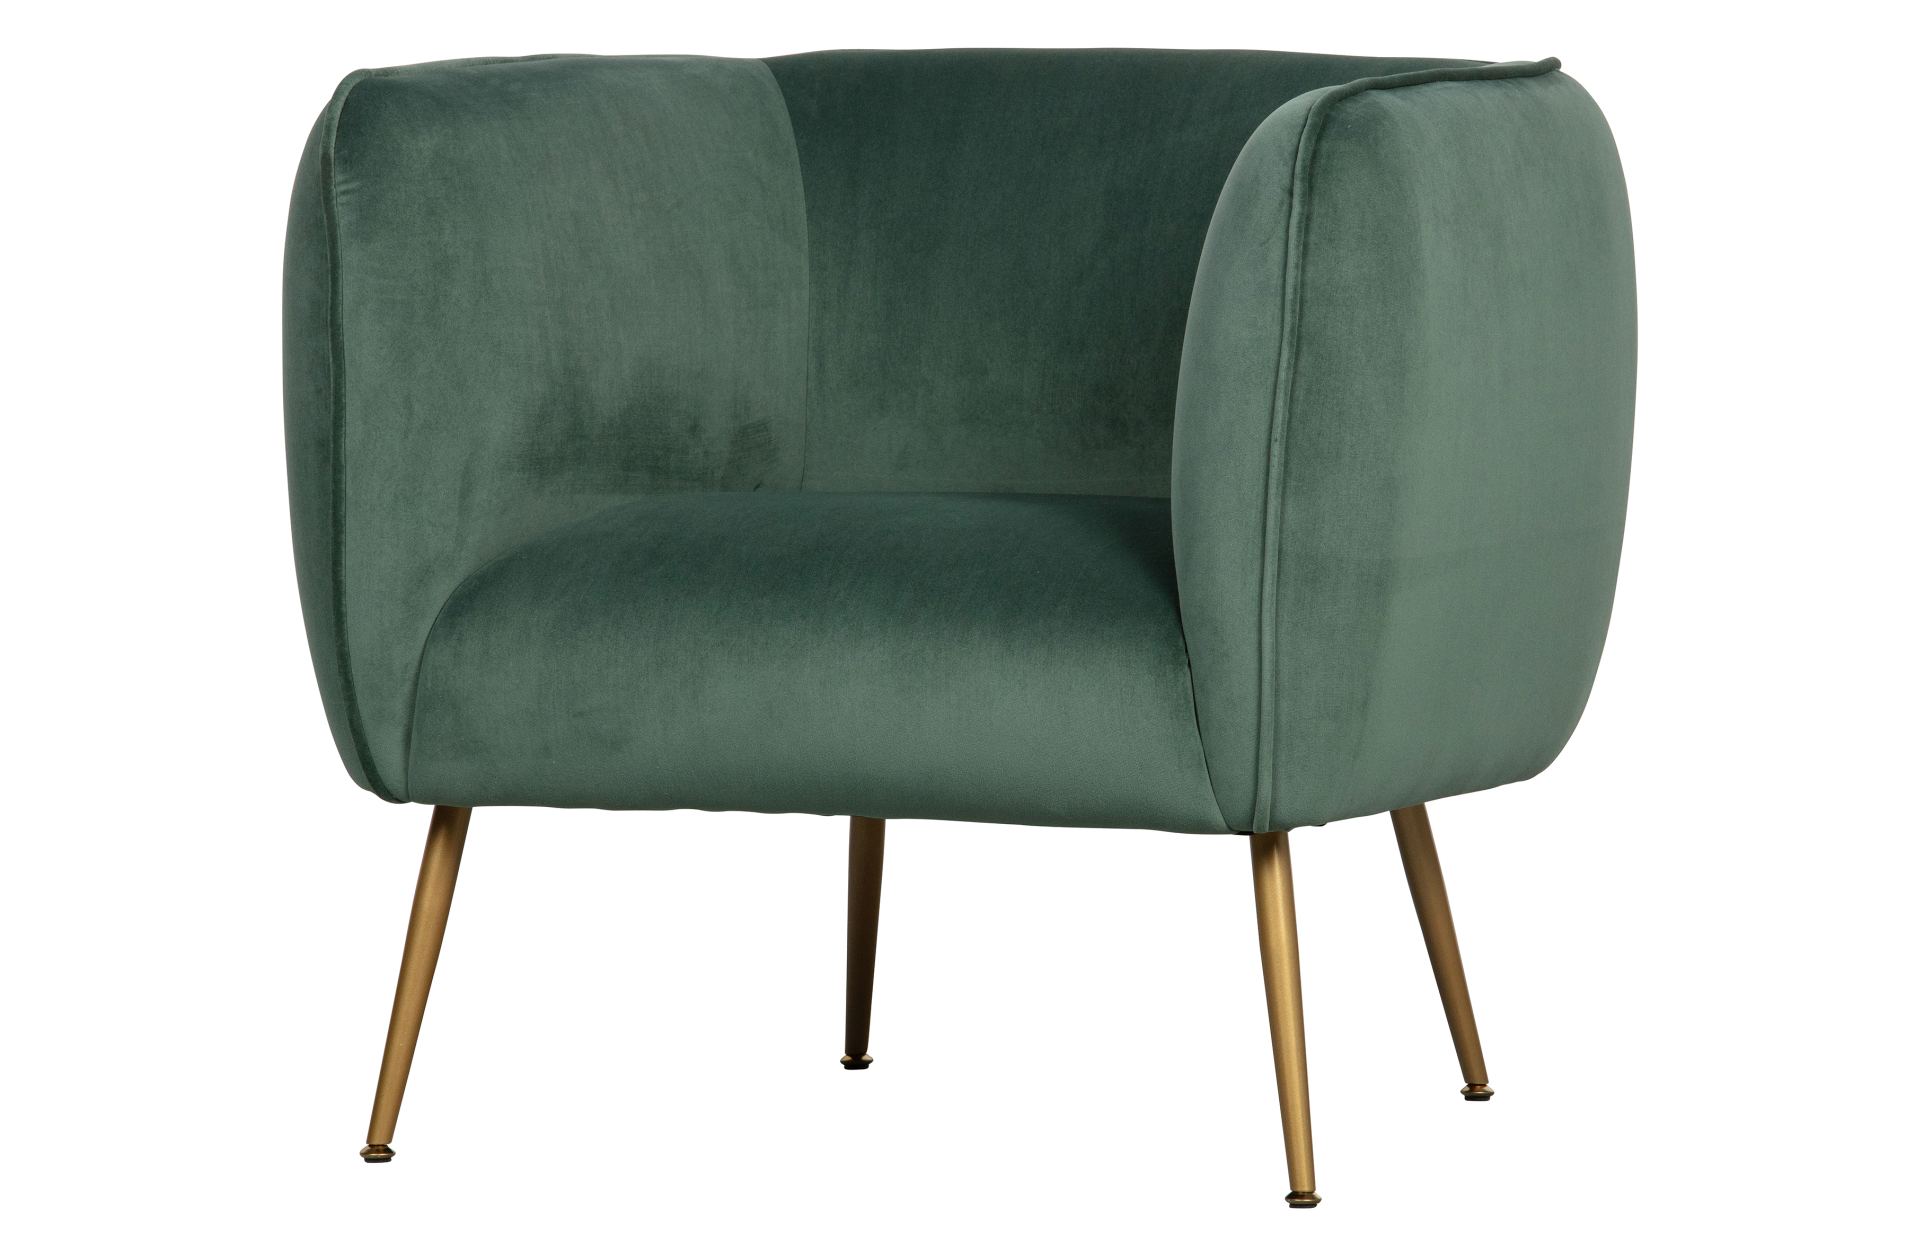 Der Sessel Scout wurde aus einem Samt Bezug gefertigt, Welches einen grünen Farbton besitzt. Das Gestell ist aus Metall und ist in einem goldenem Farbton.